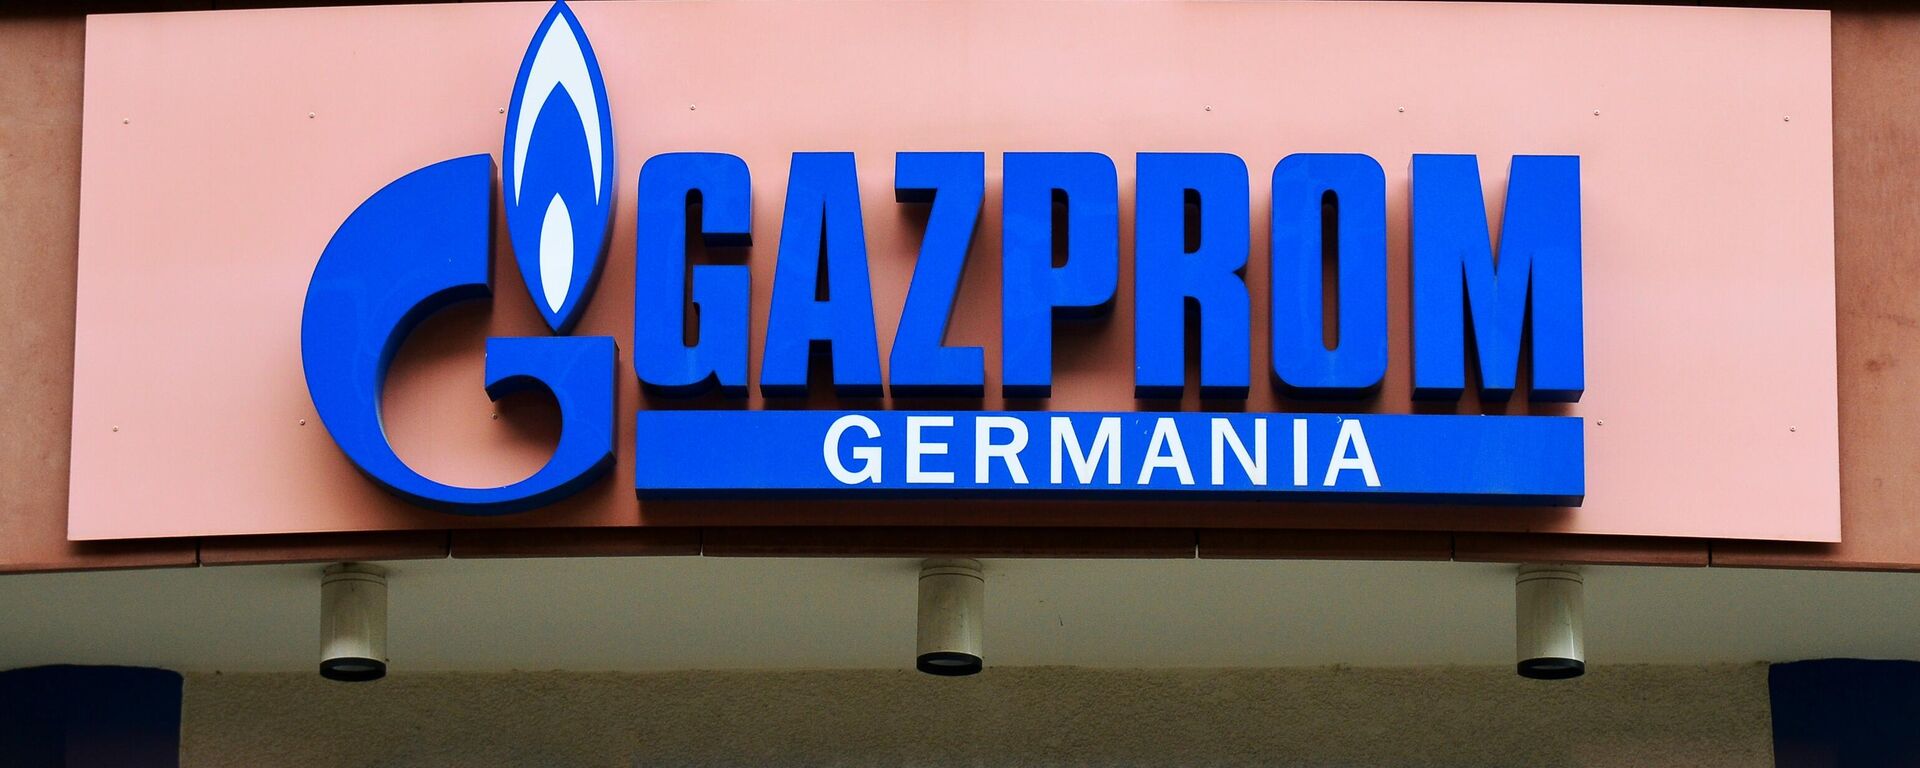 Gazprom Germania office in Berlin - Sputnik International, 1920, 04.04.2022